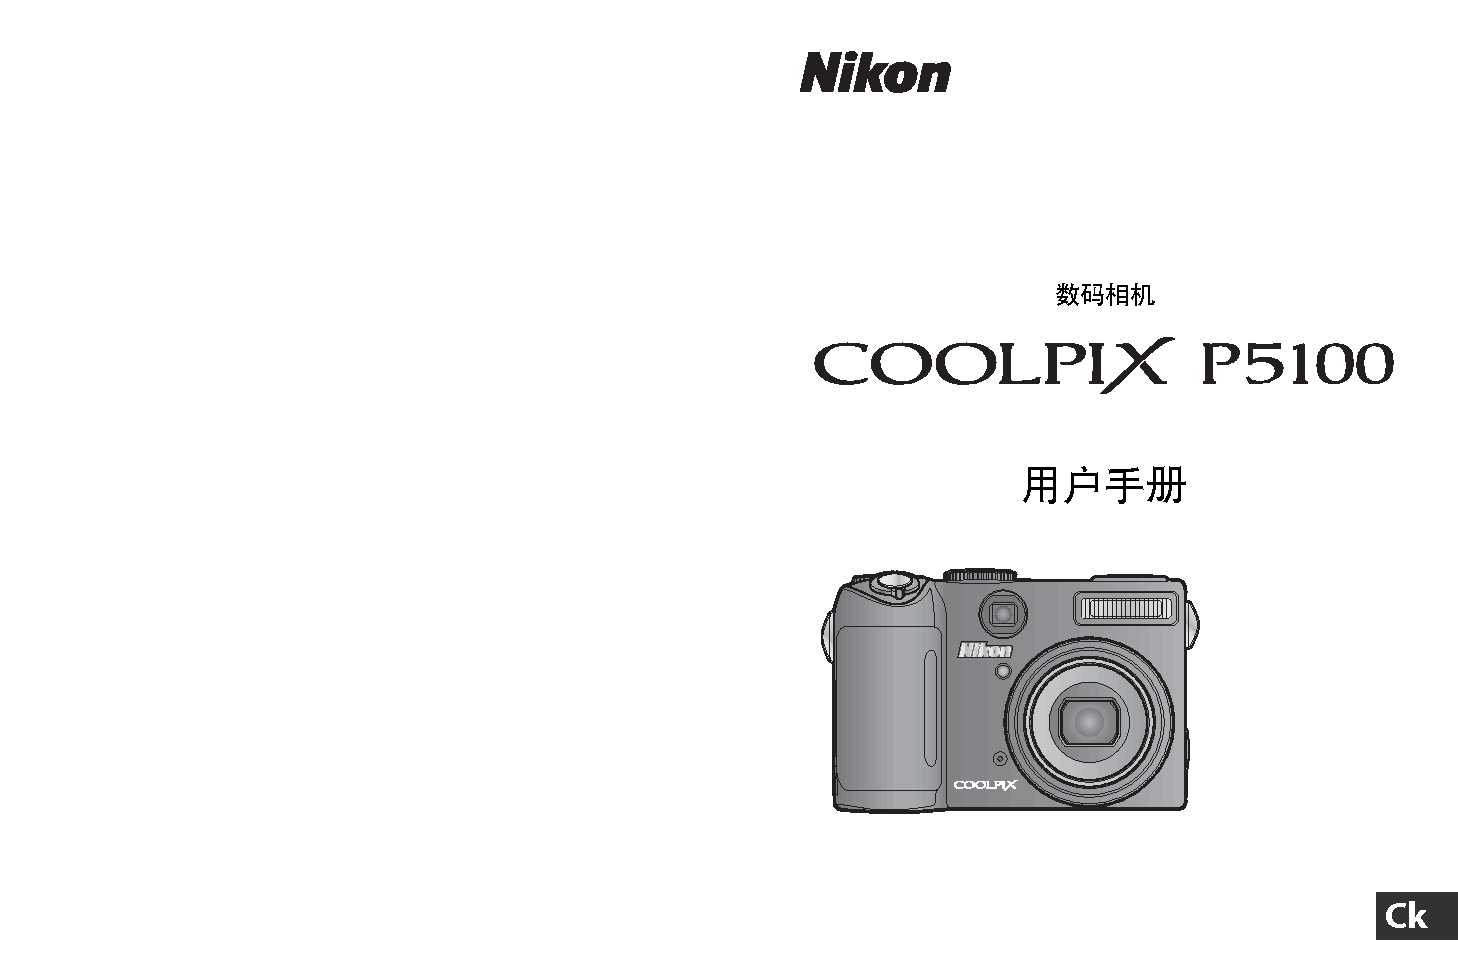 尼康 Nikon COOLPIX P5100 用户指南 封面